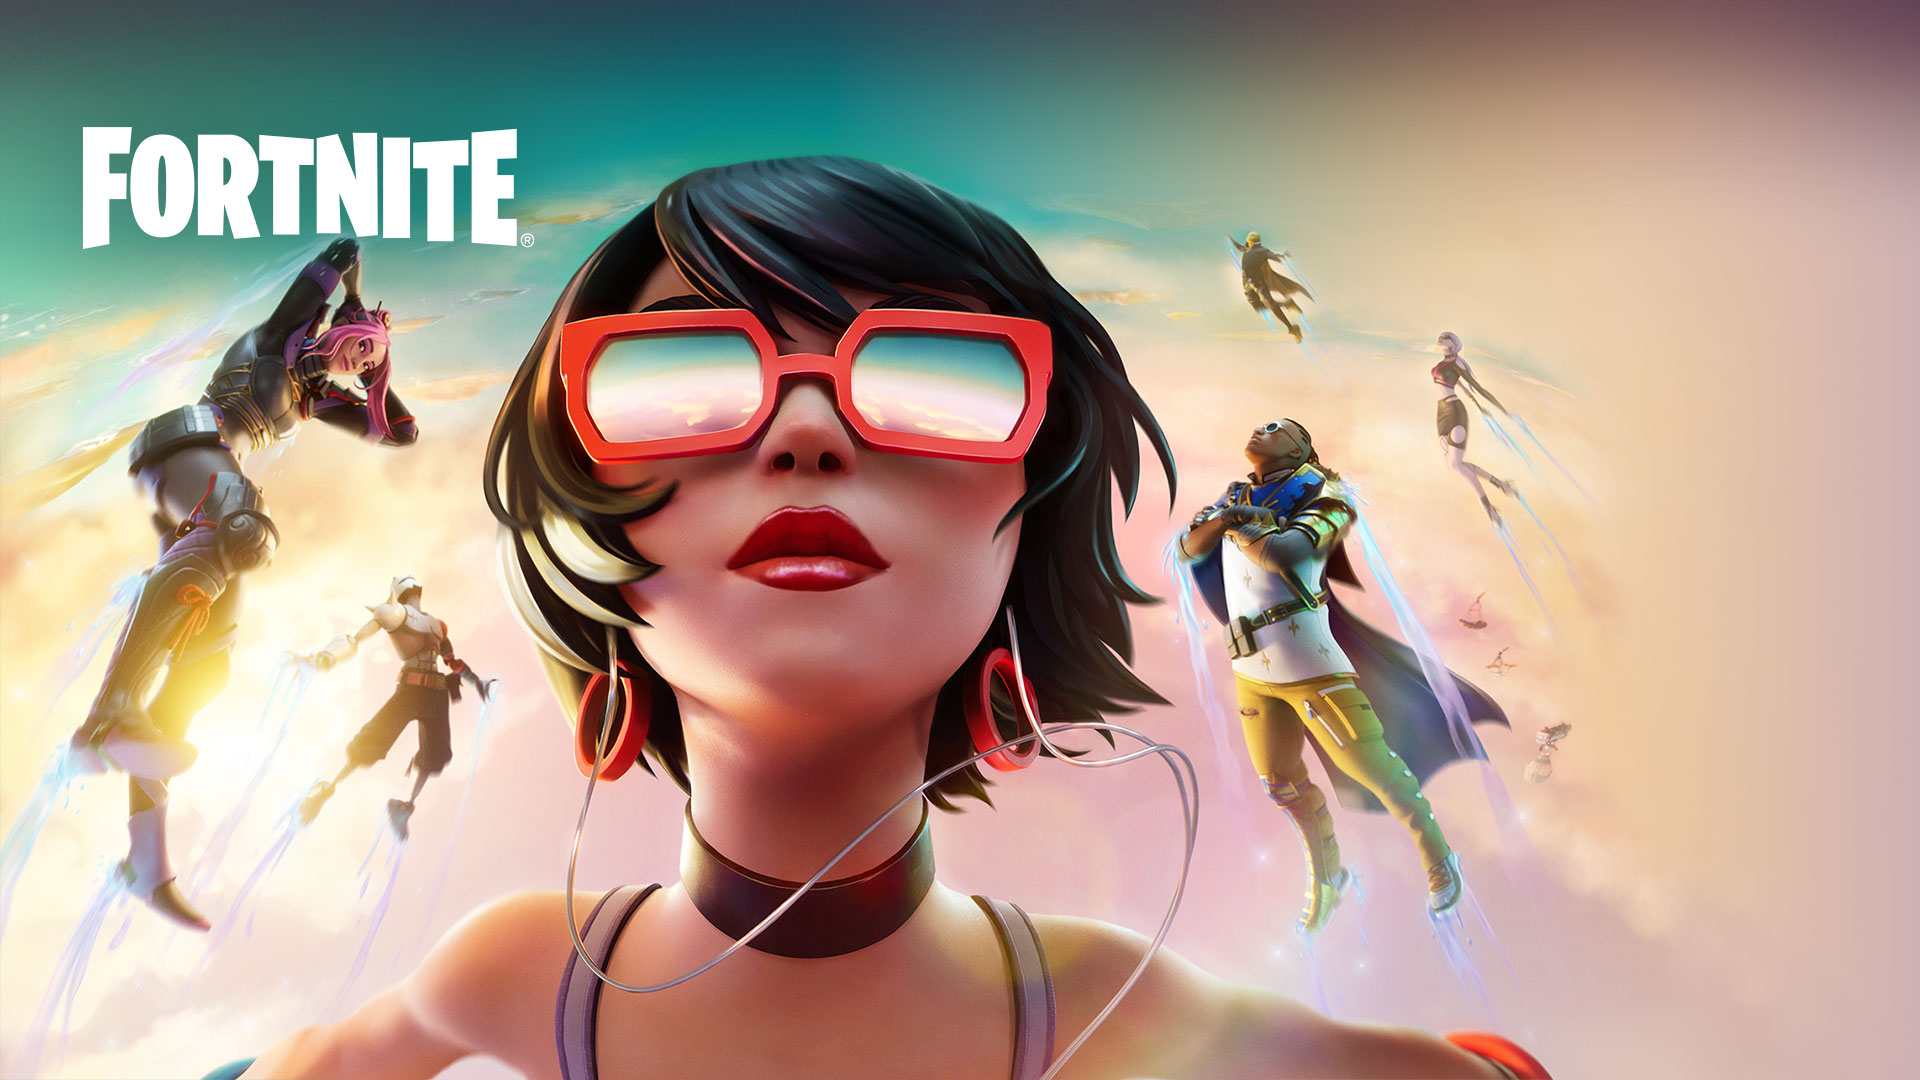 Fortnite, Een meisje met een rode zonnebril zweeft in de wolken met andere personages tegen een pastelkleurige lucht.